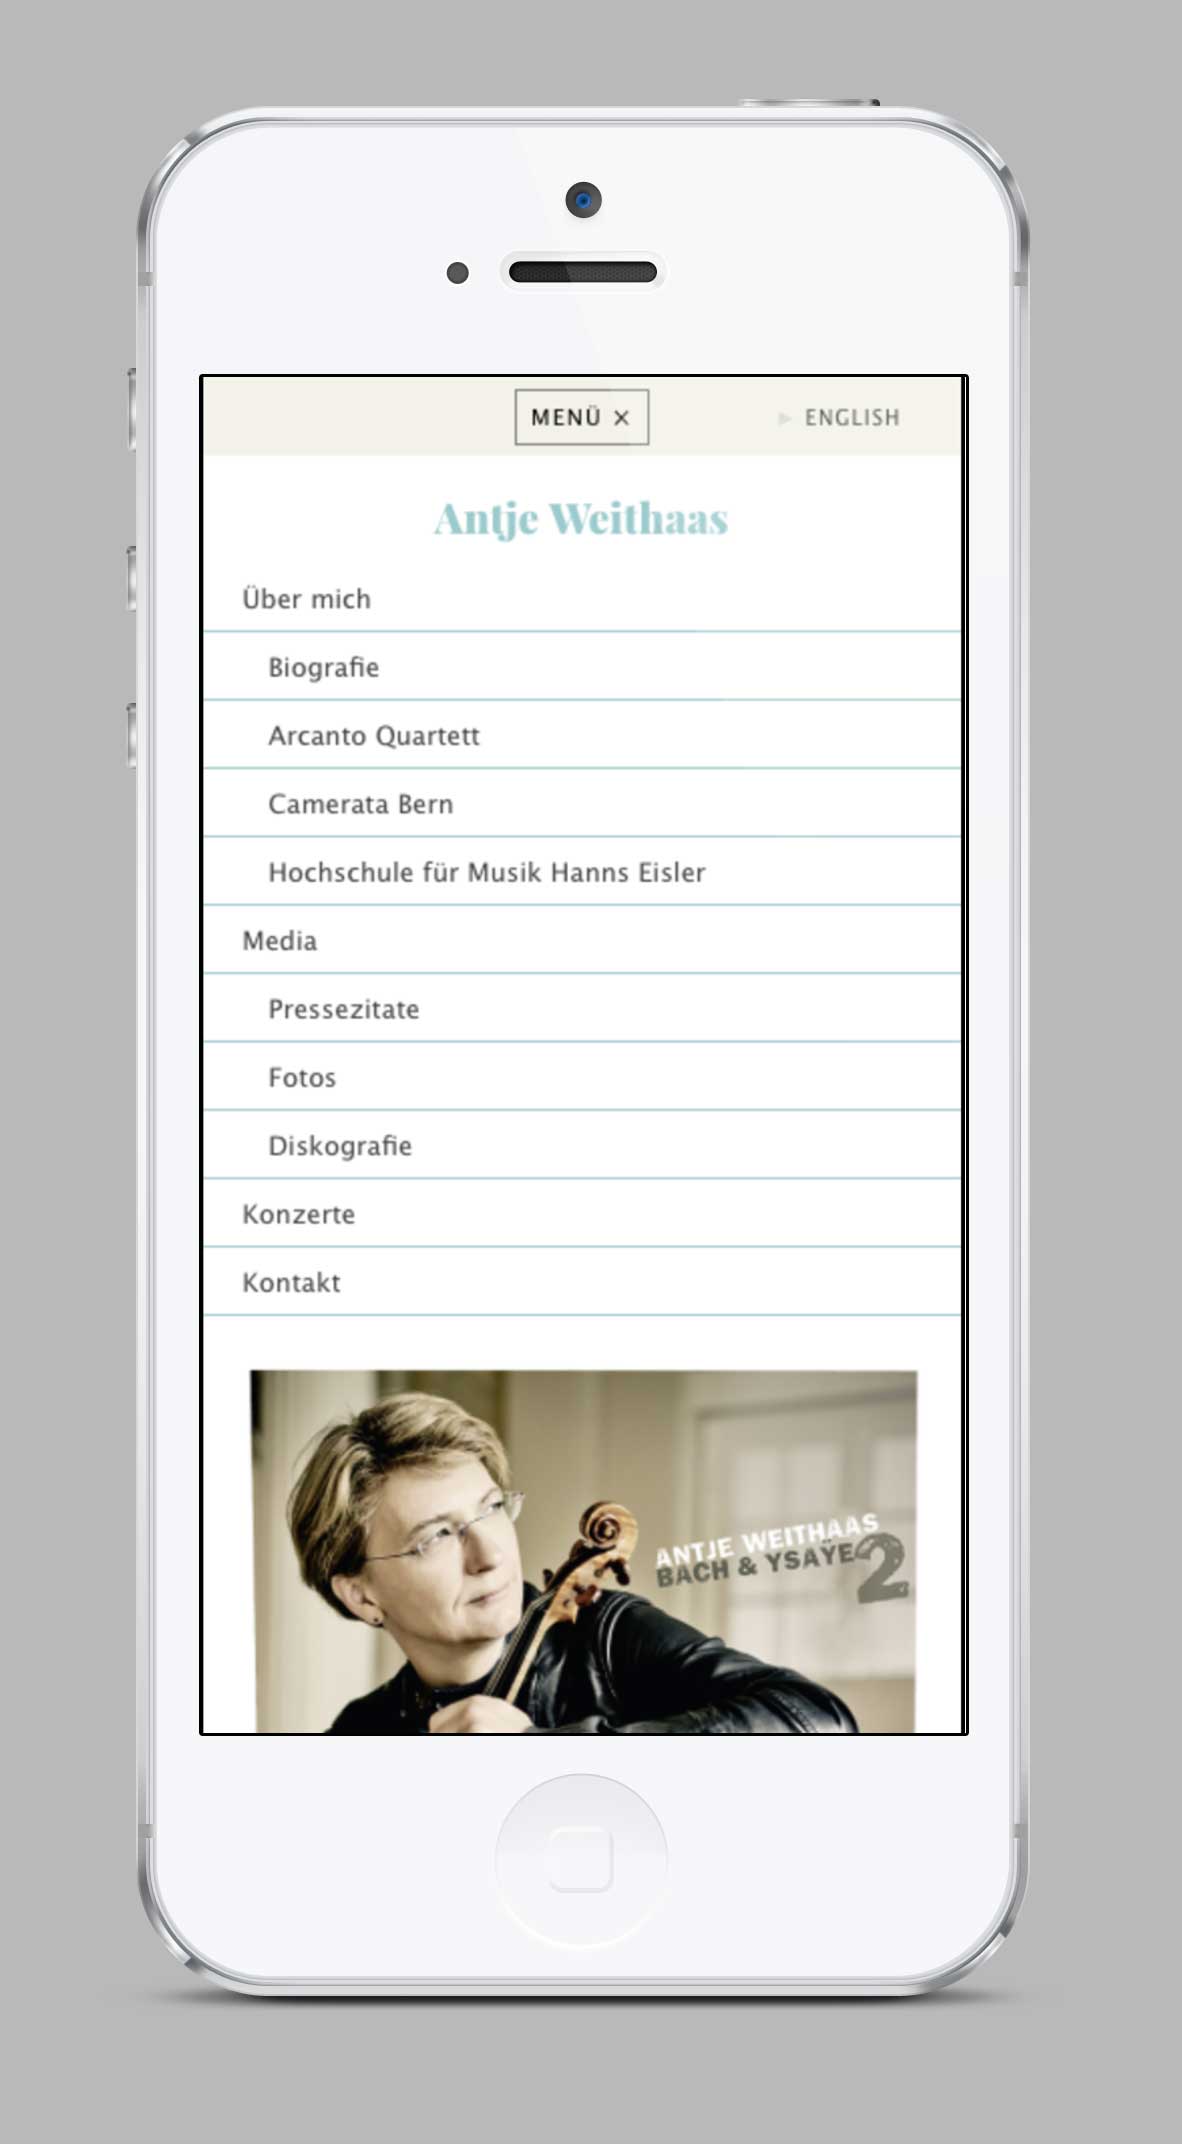 weithaas-menu-mobile